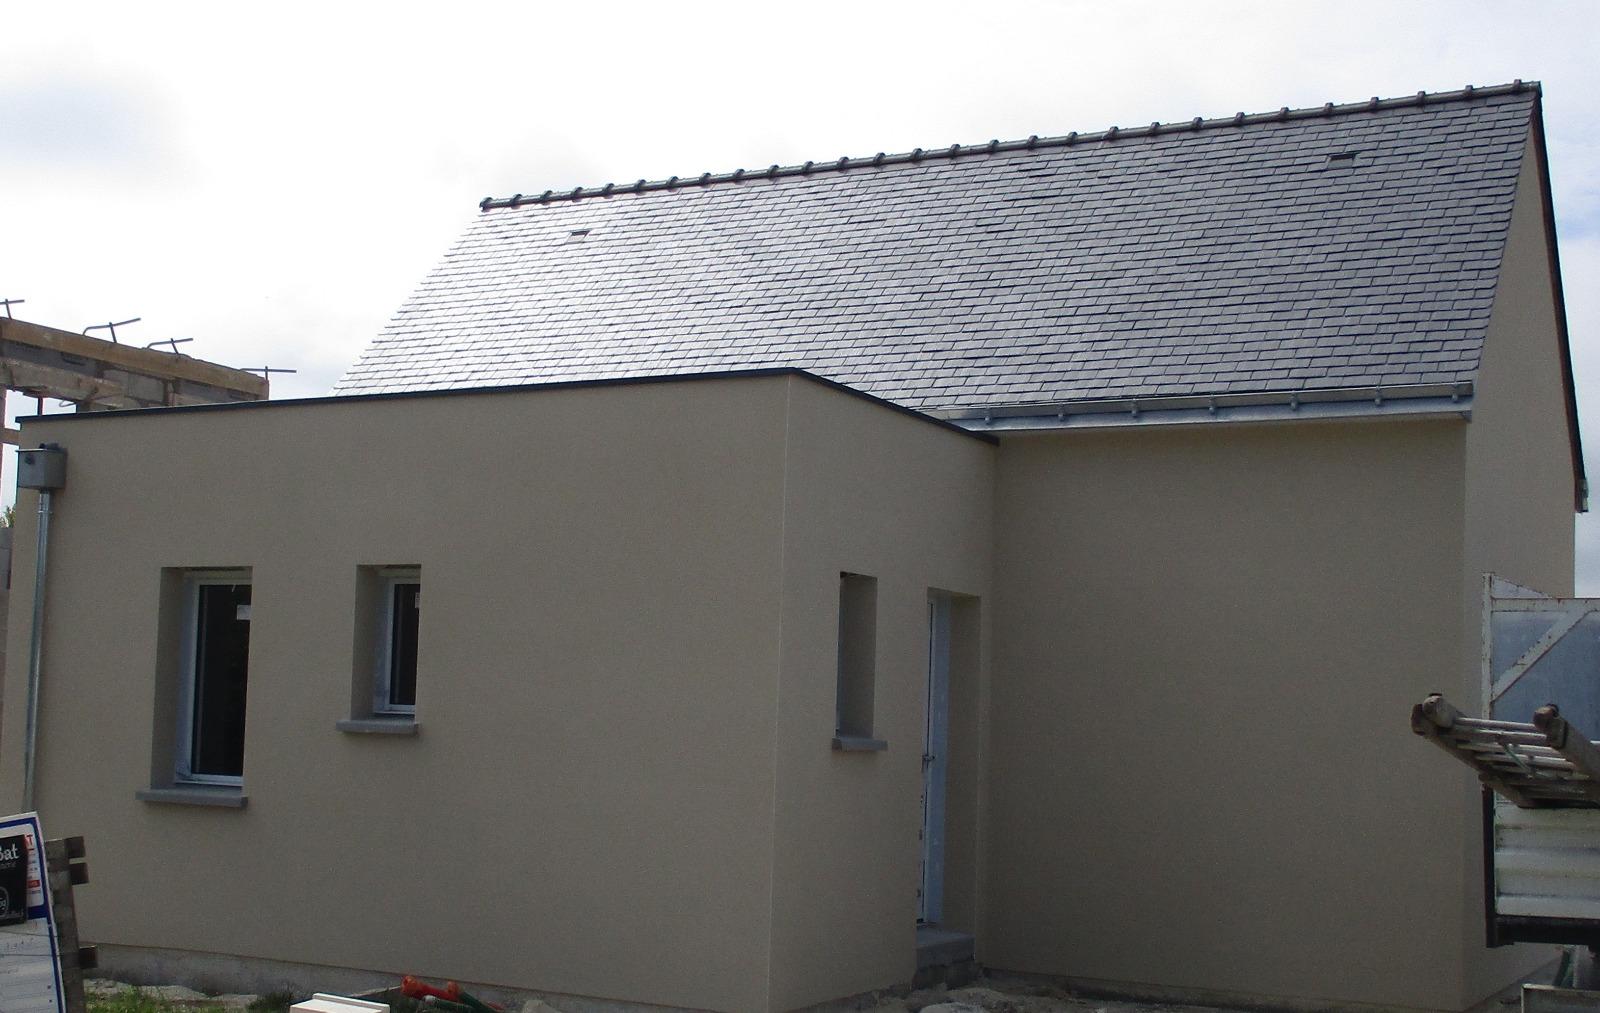 Mesquer - Construction neuve - Etanchéité toit terrasse inaccessible - Isolation extérieure ép. 200 mm - Membrane FPO 1,5 mm